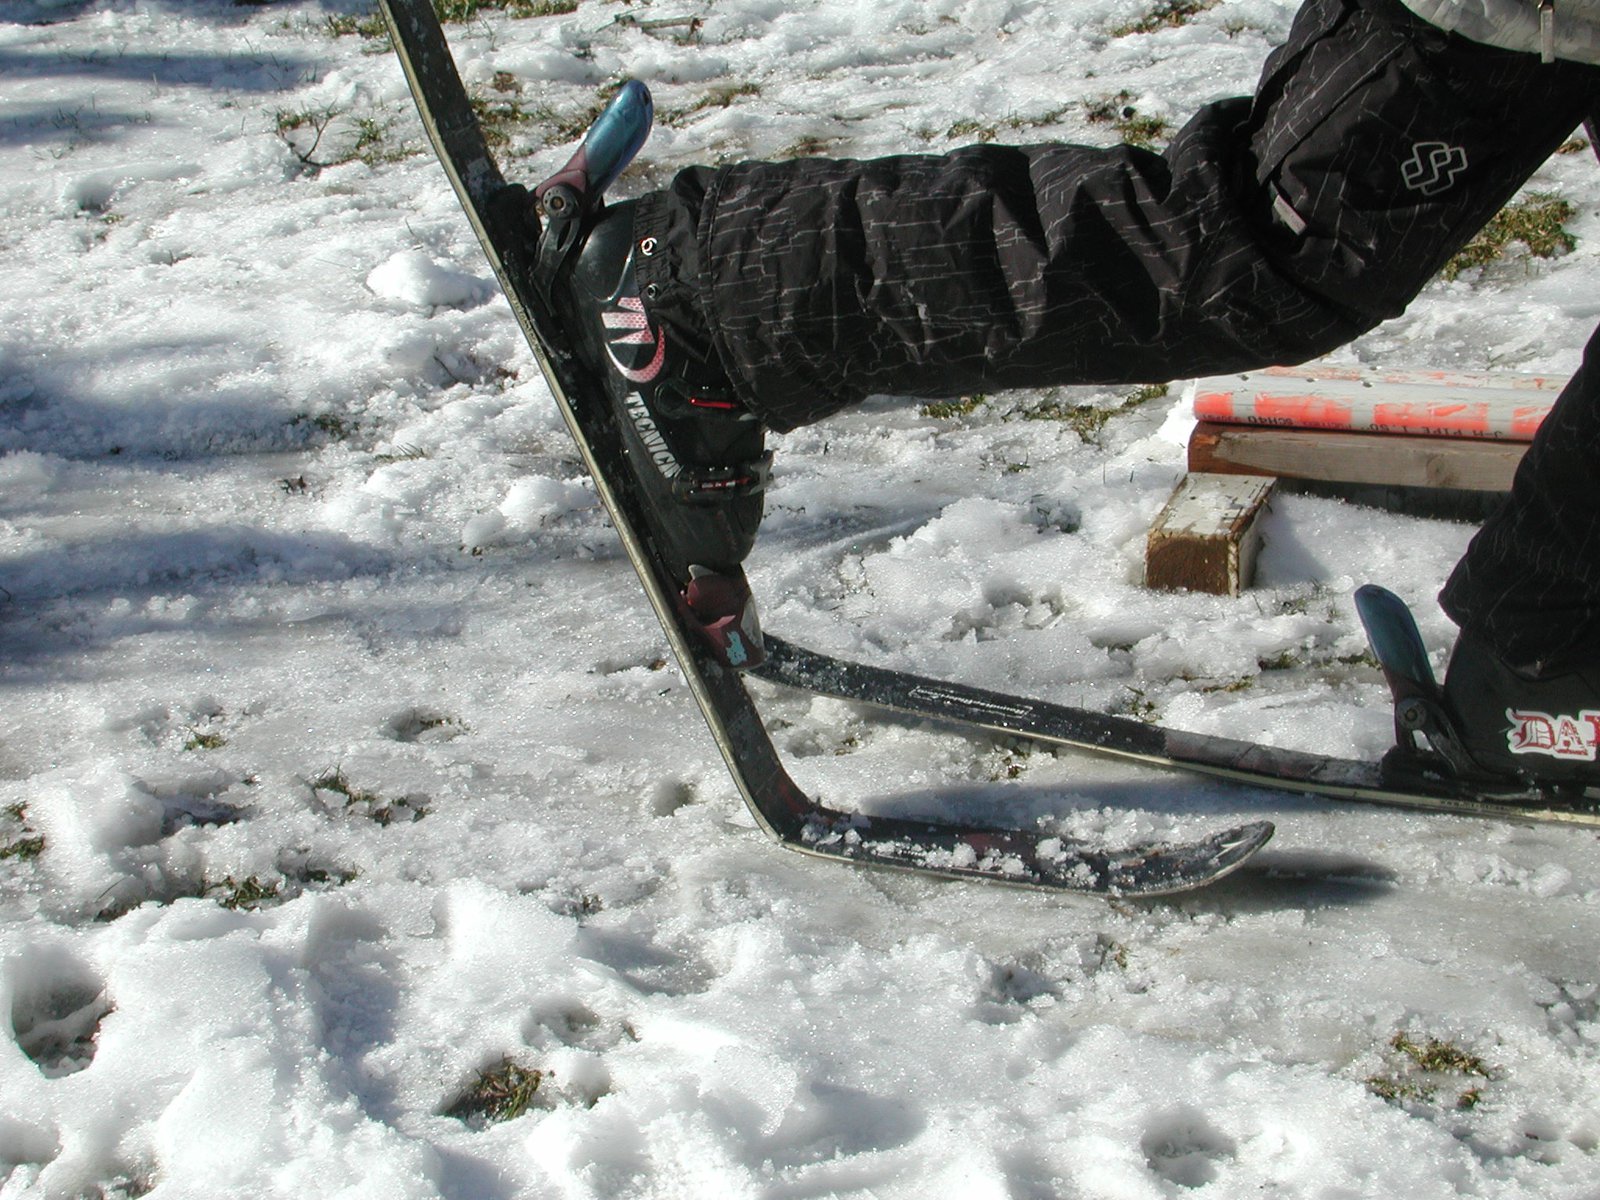 Broke my ski